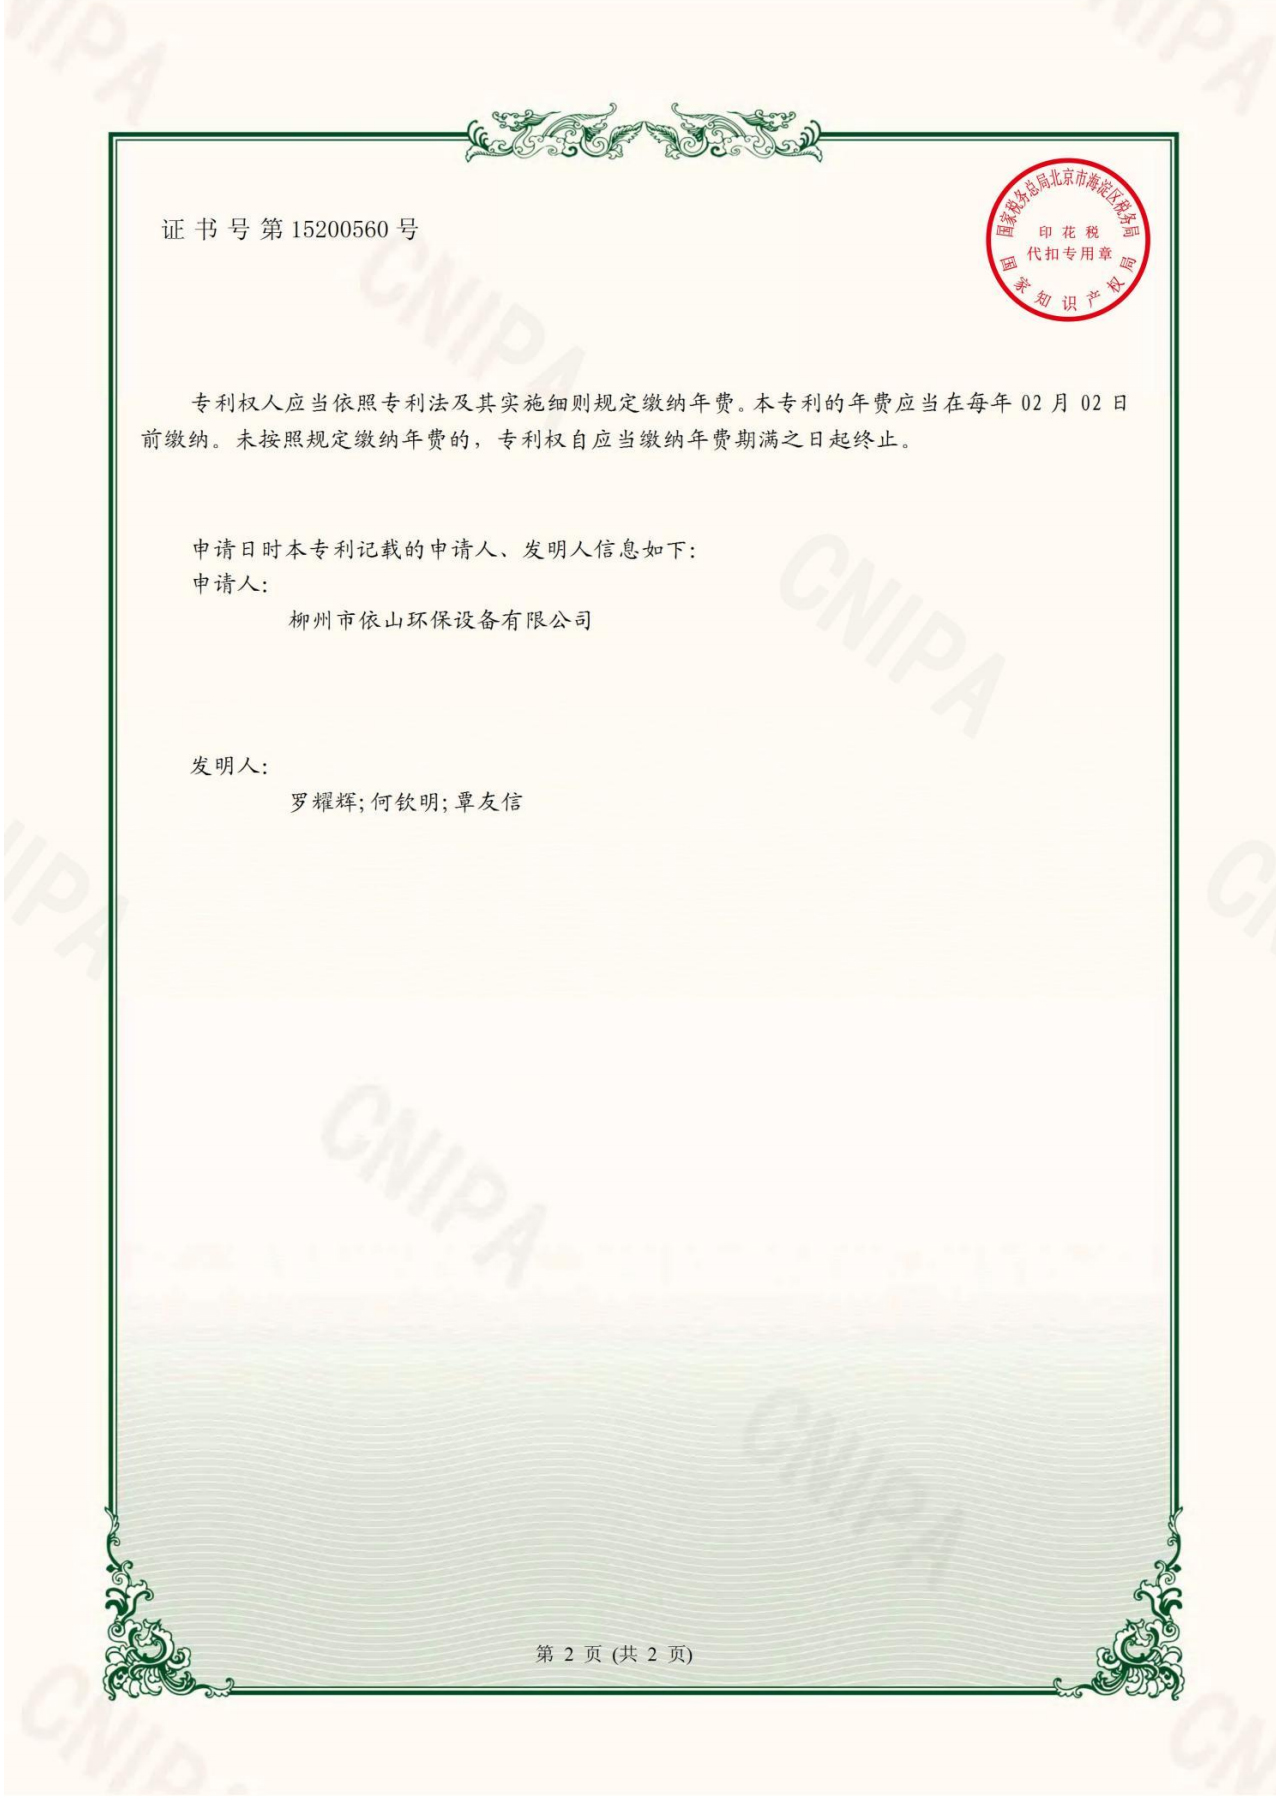 柳州市依山环保设备有限公司资质文件_19.jpg